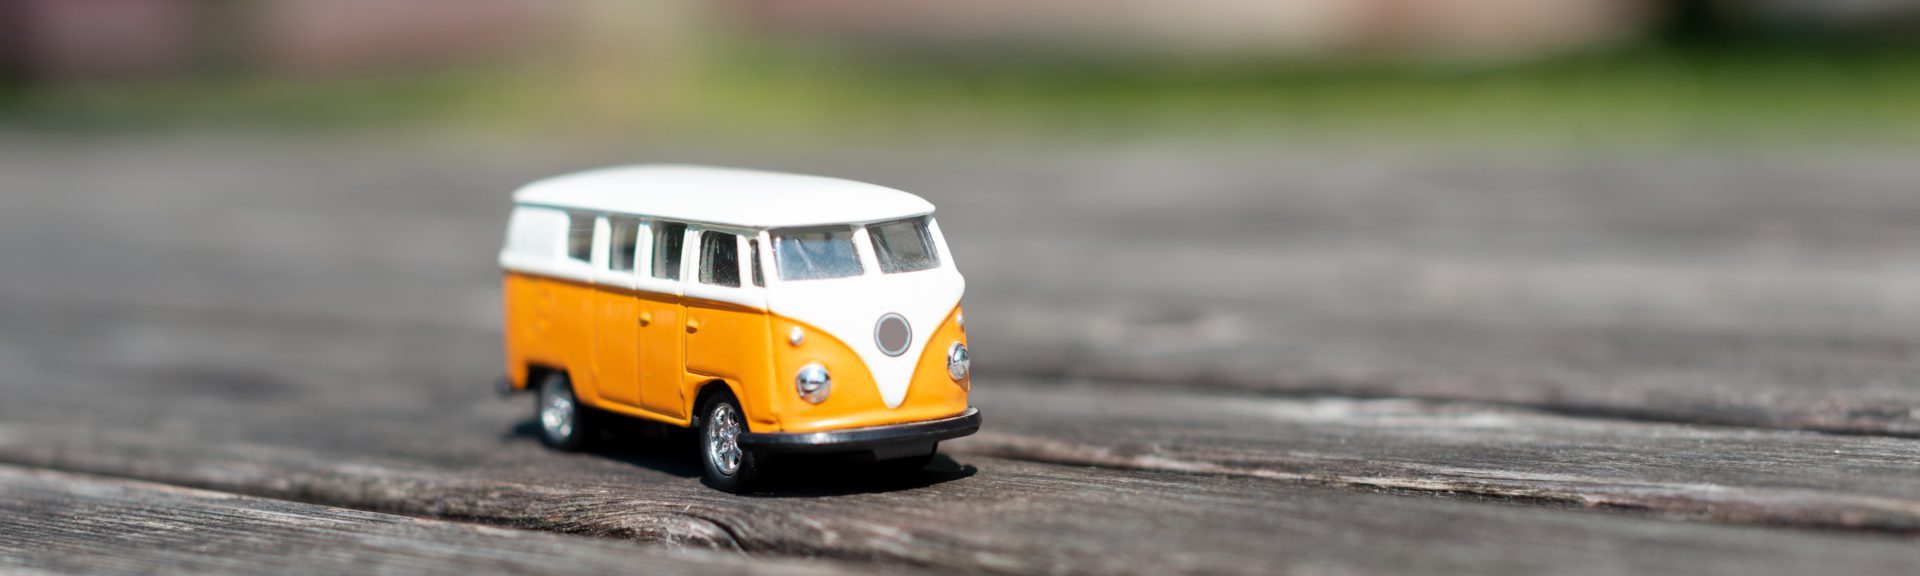 Auf einem Holzboden im Freien steht ein alter VW-Bus mit oranger Lackierung und weißem Dach.